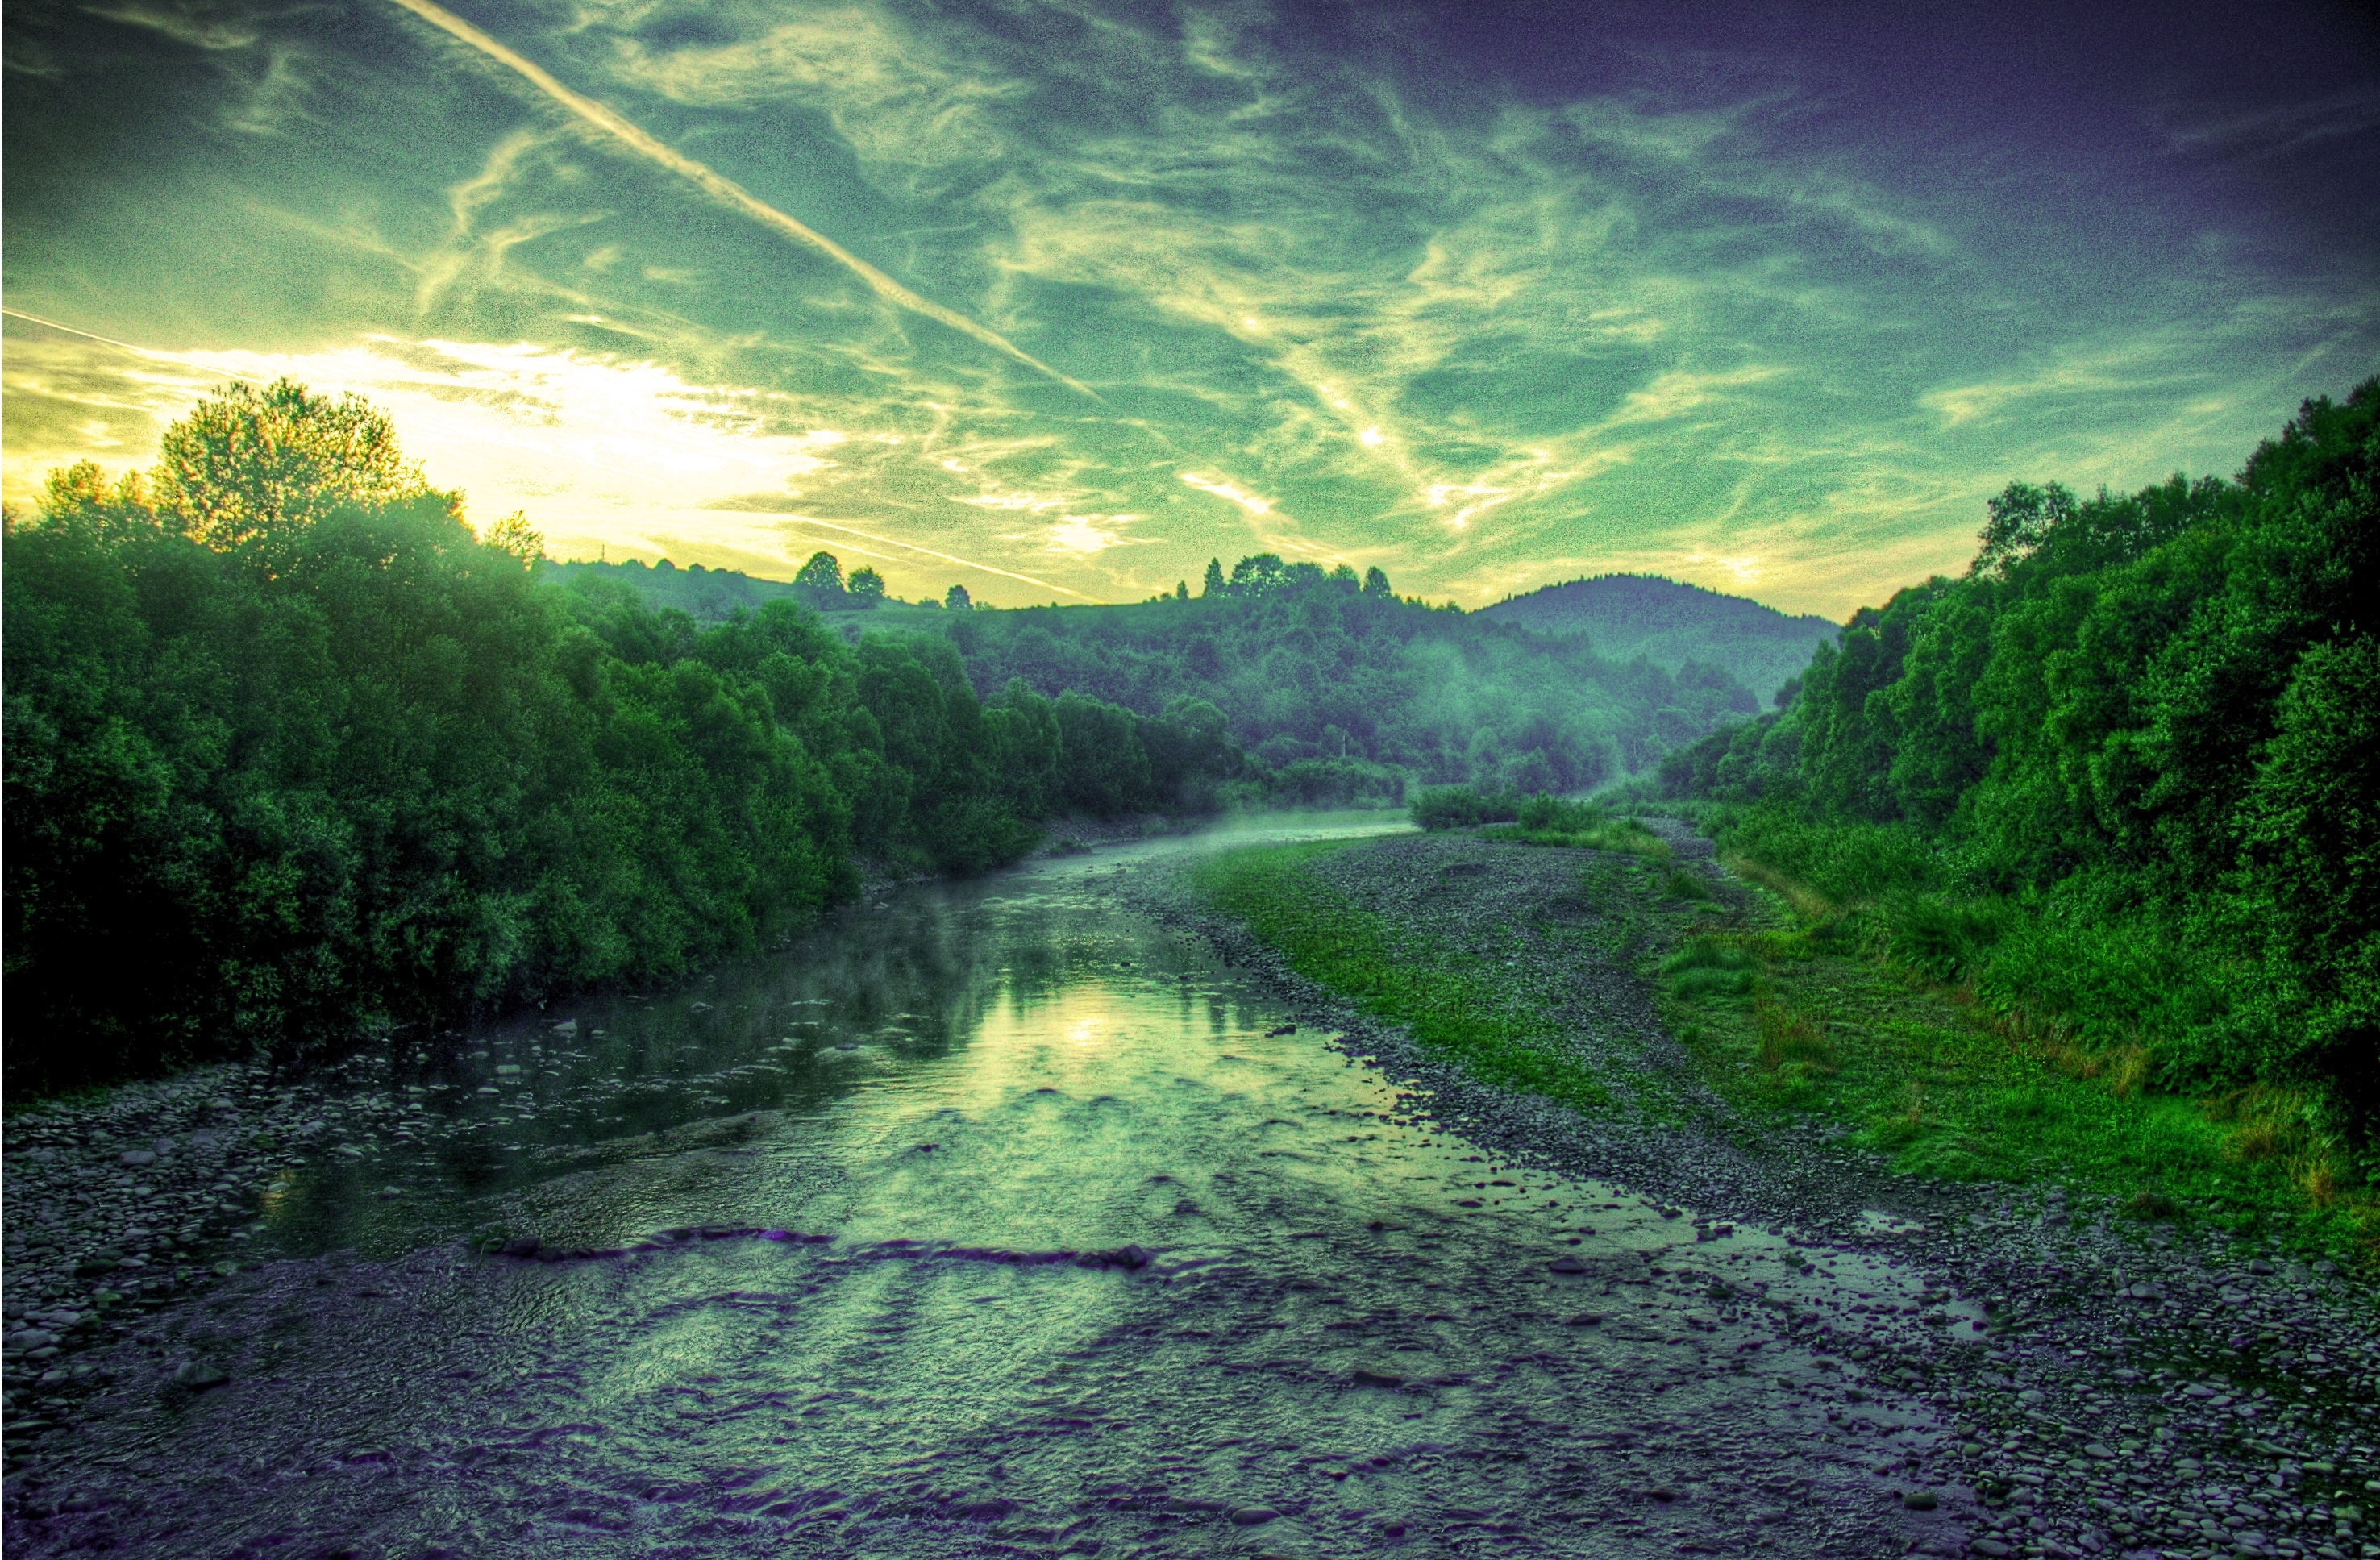 rivers, landscape, nature, trees, sunset Image for desktop